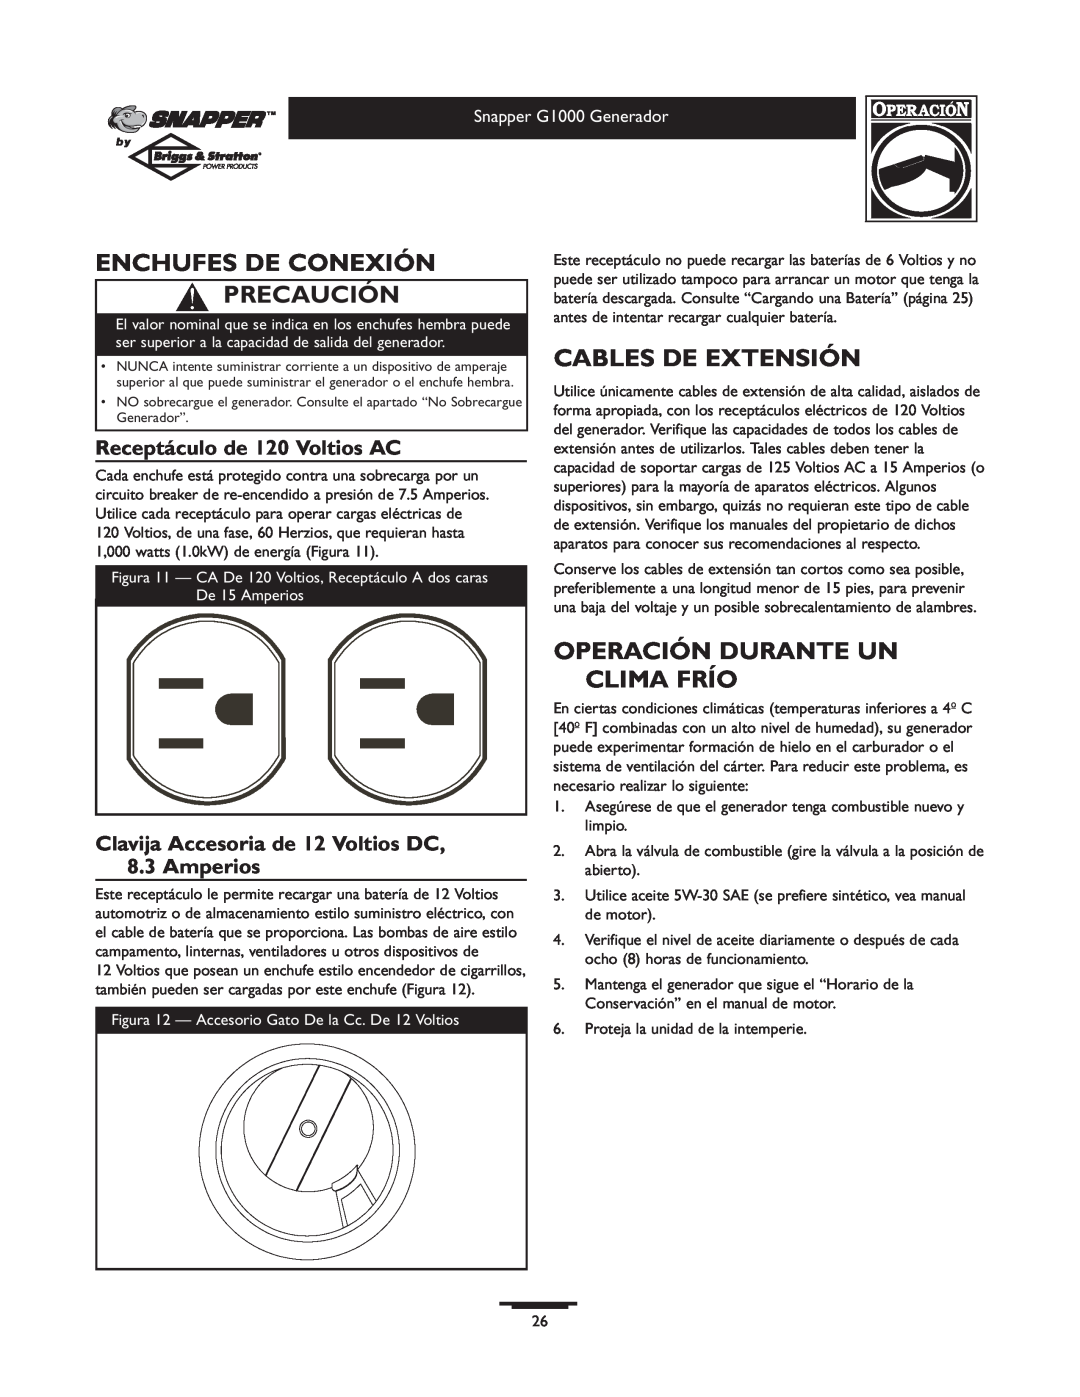 Snapper G1000 owner manual Enchufes De Conexión Precaución, Cables De Extensión, Operación Durante Un Clima Frío 